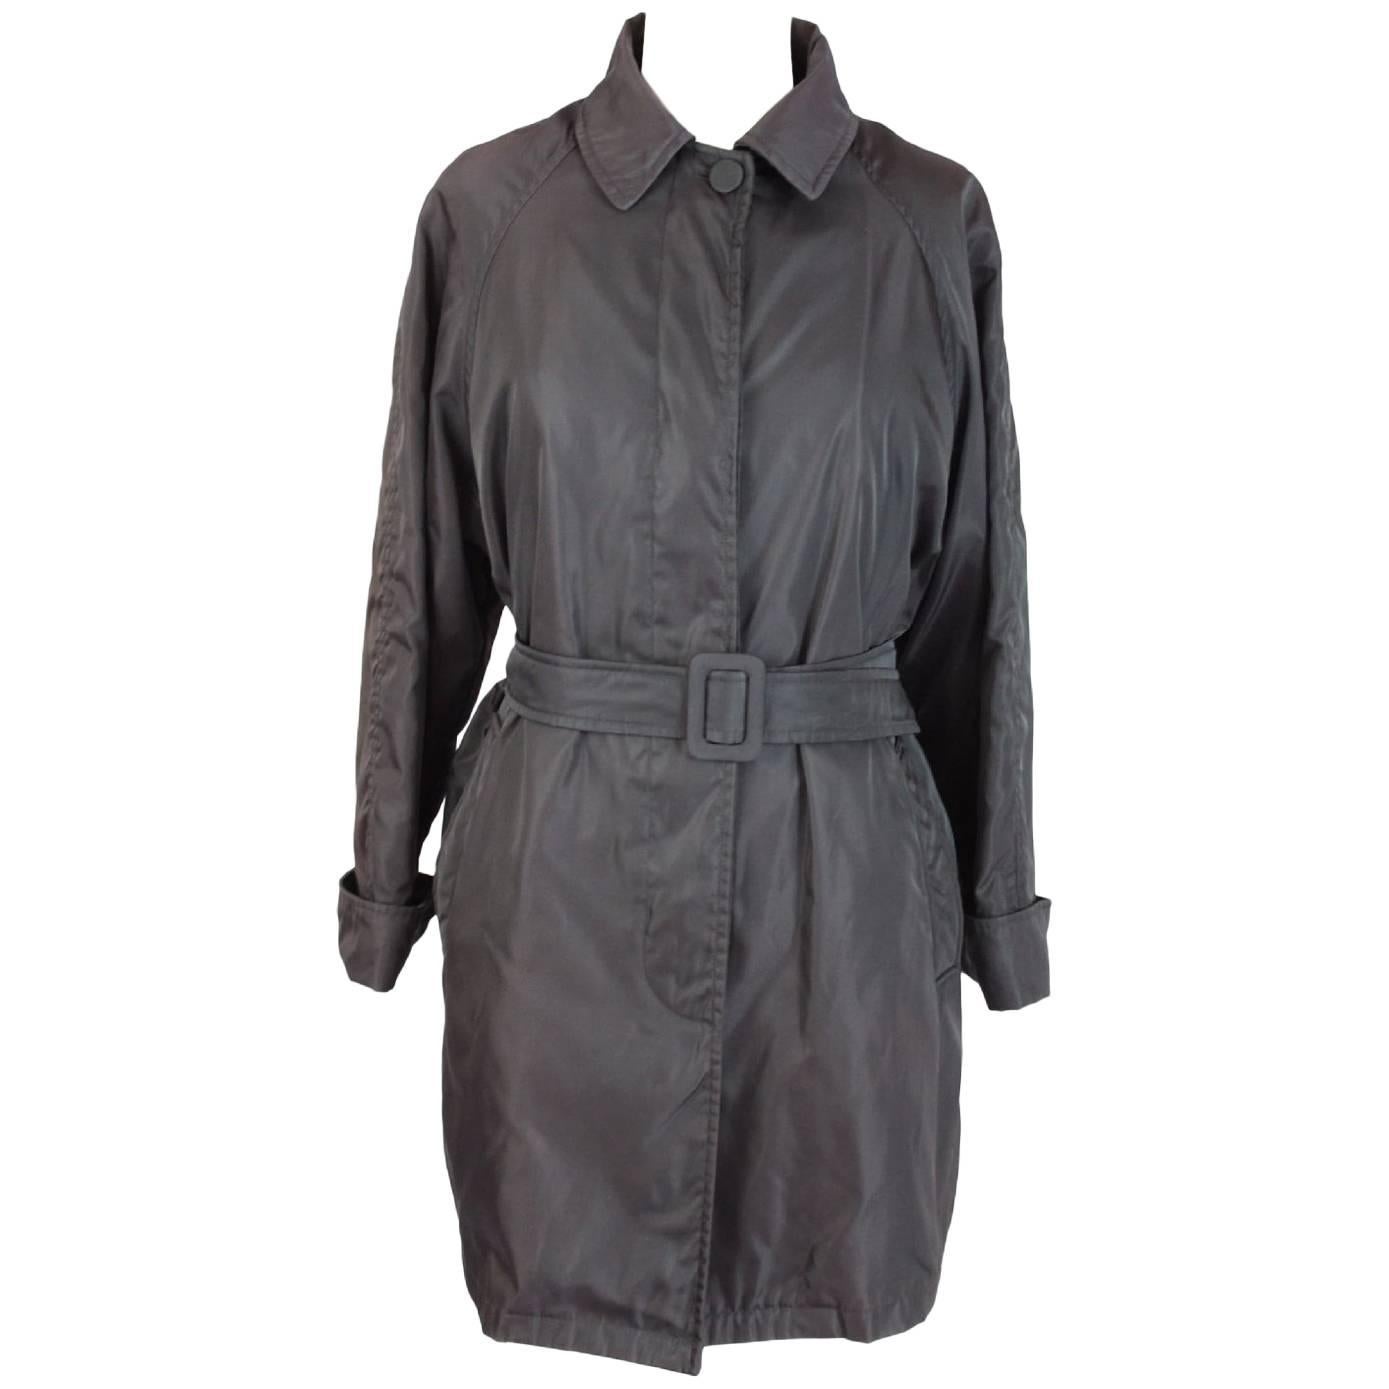 1990s Prada waterproof brown trench coat raincoat size S women’s  For Sale